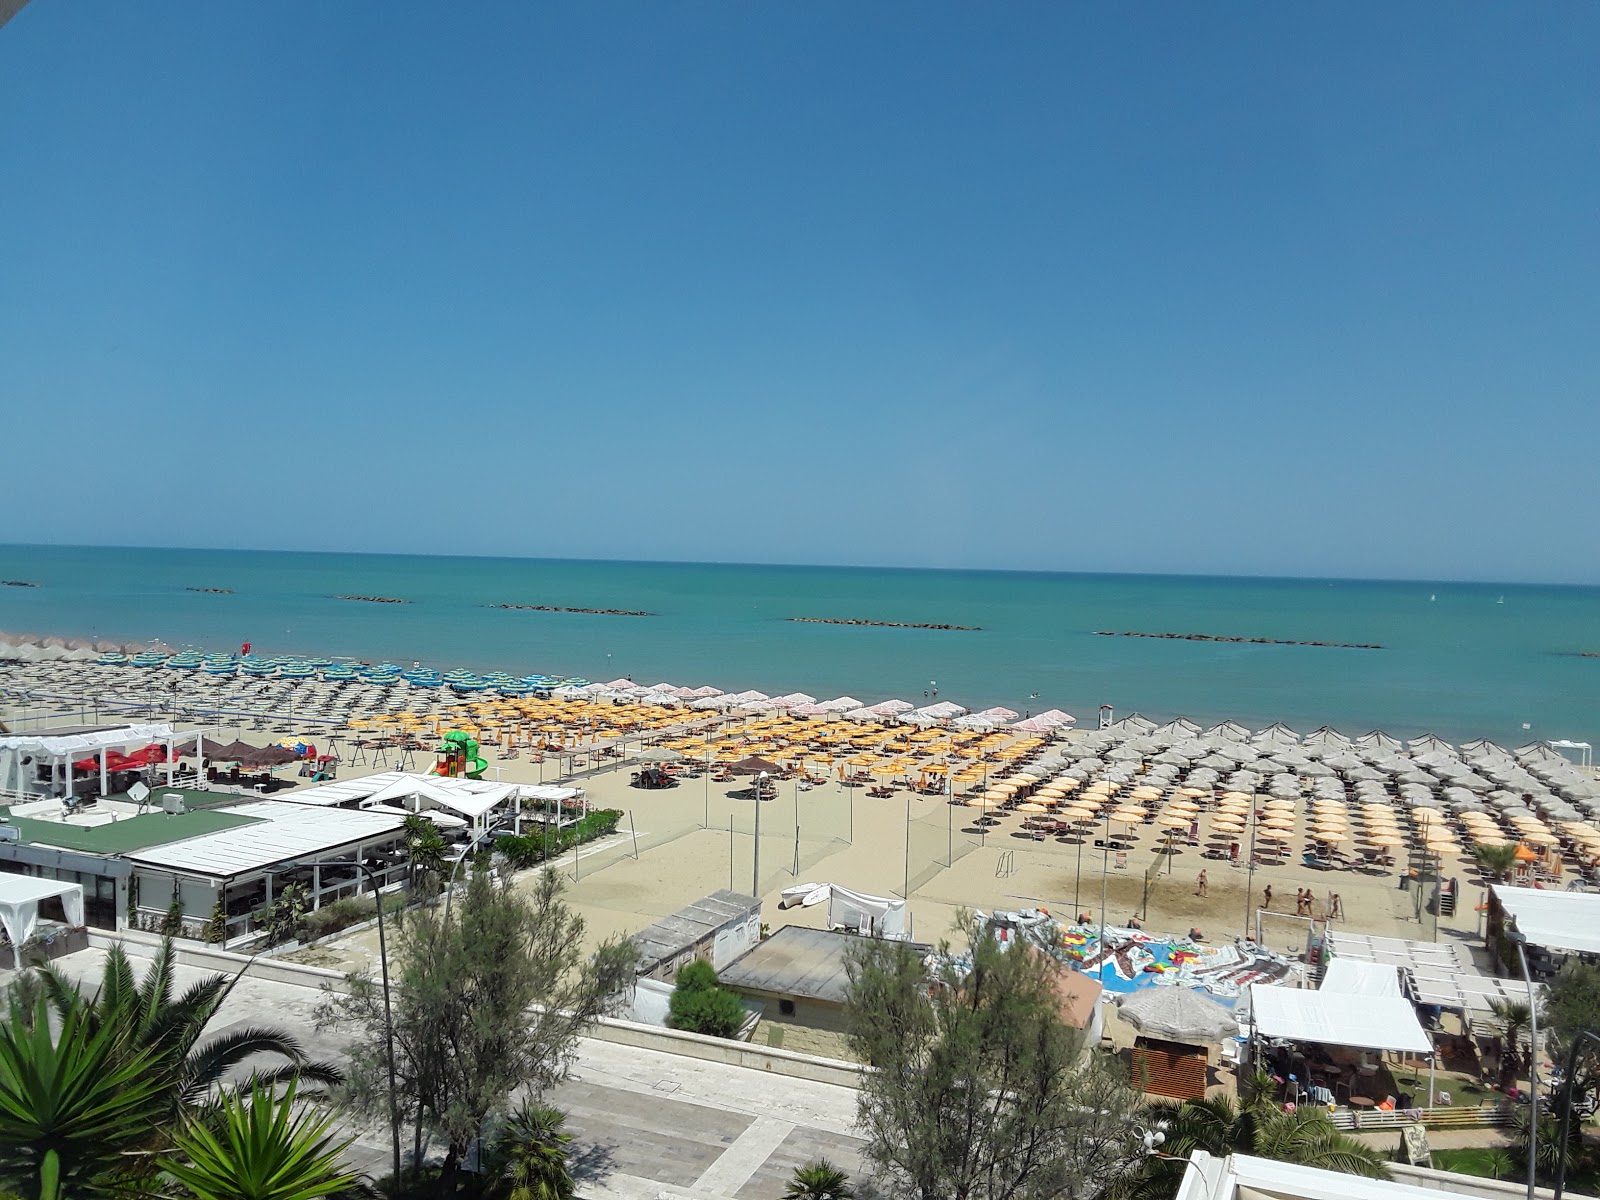 Spiaggia di Pescara'in fotoğrafı parlak ince kum yüzey ile